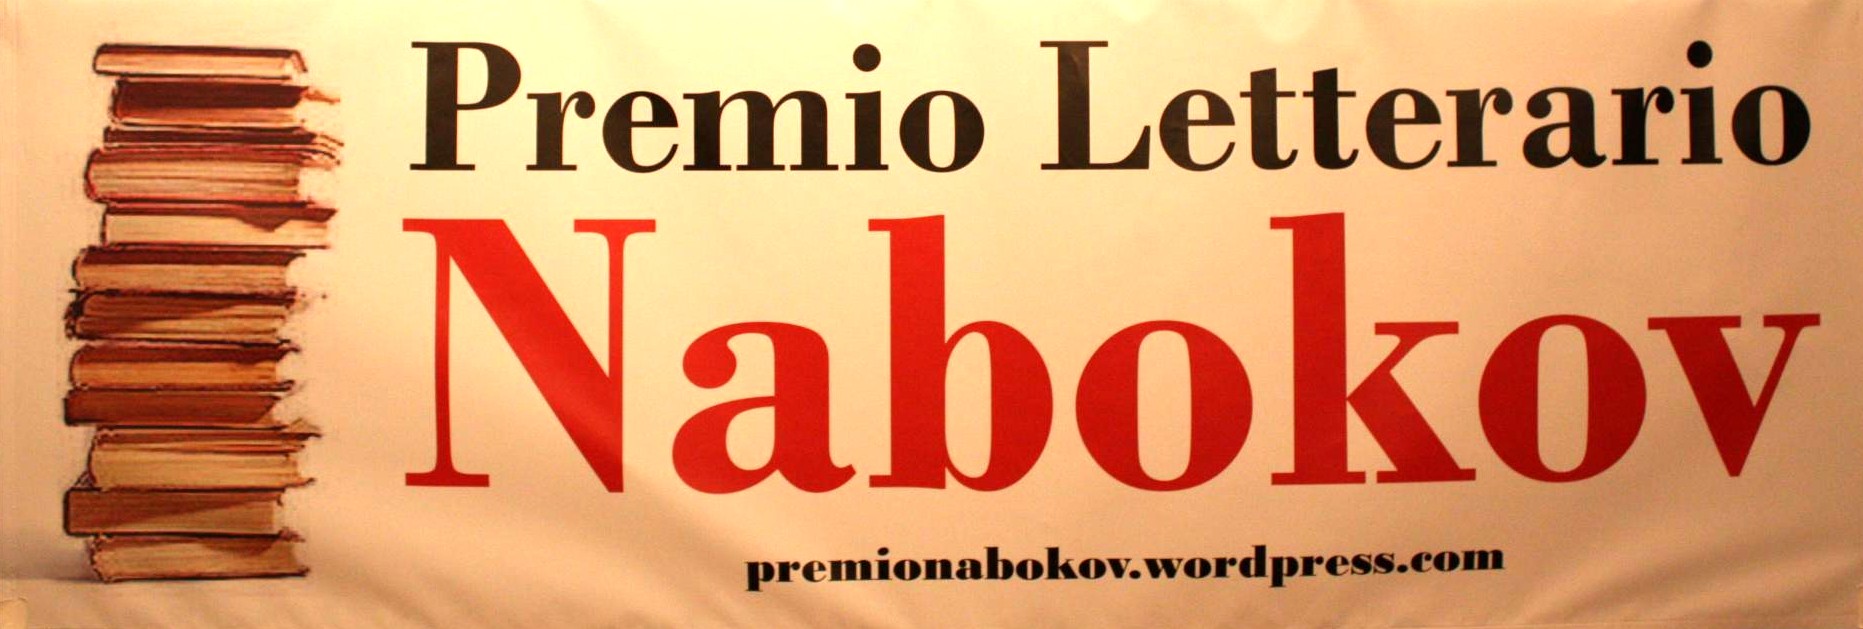 Premio Nabokov - edizione 2012. Un mese alla scadenza: 31 ottobre 2012